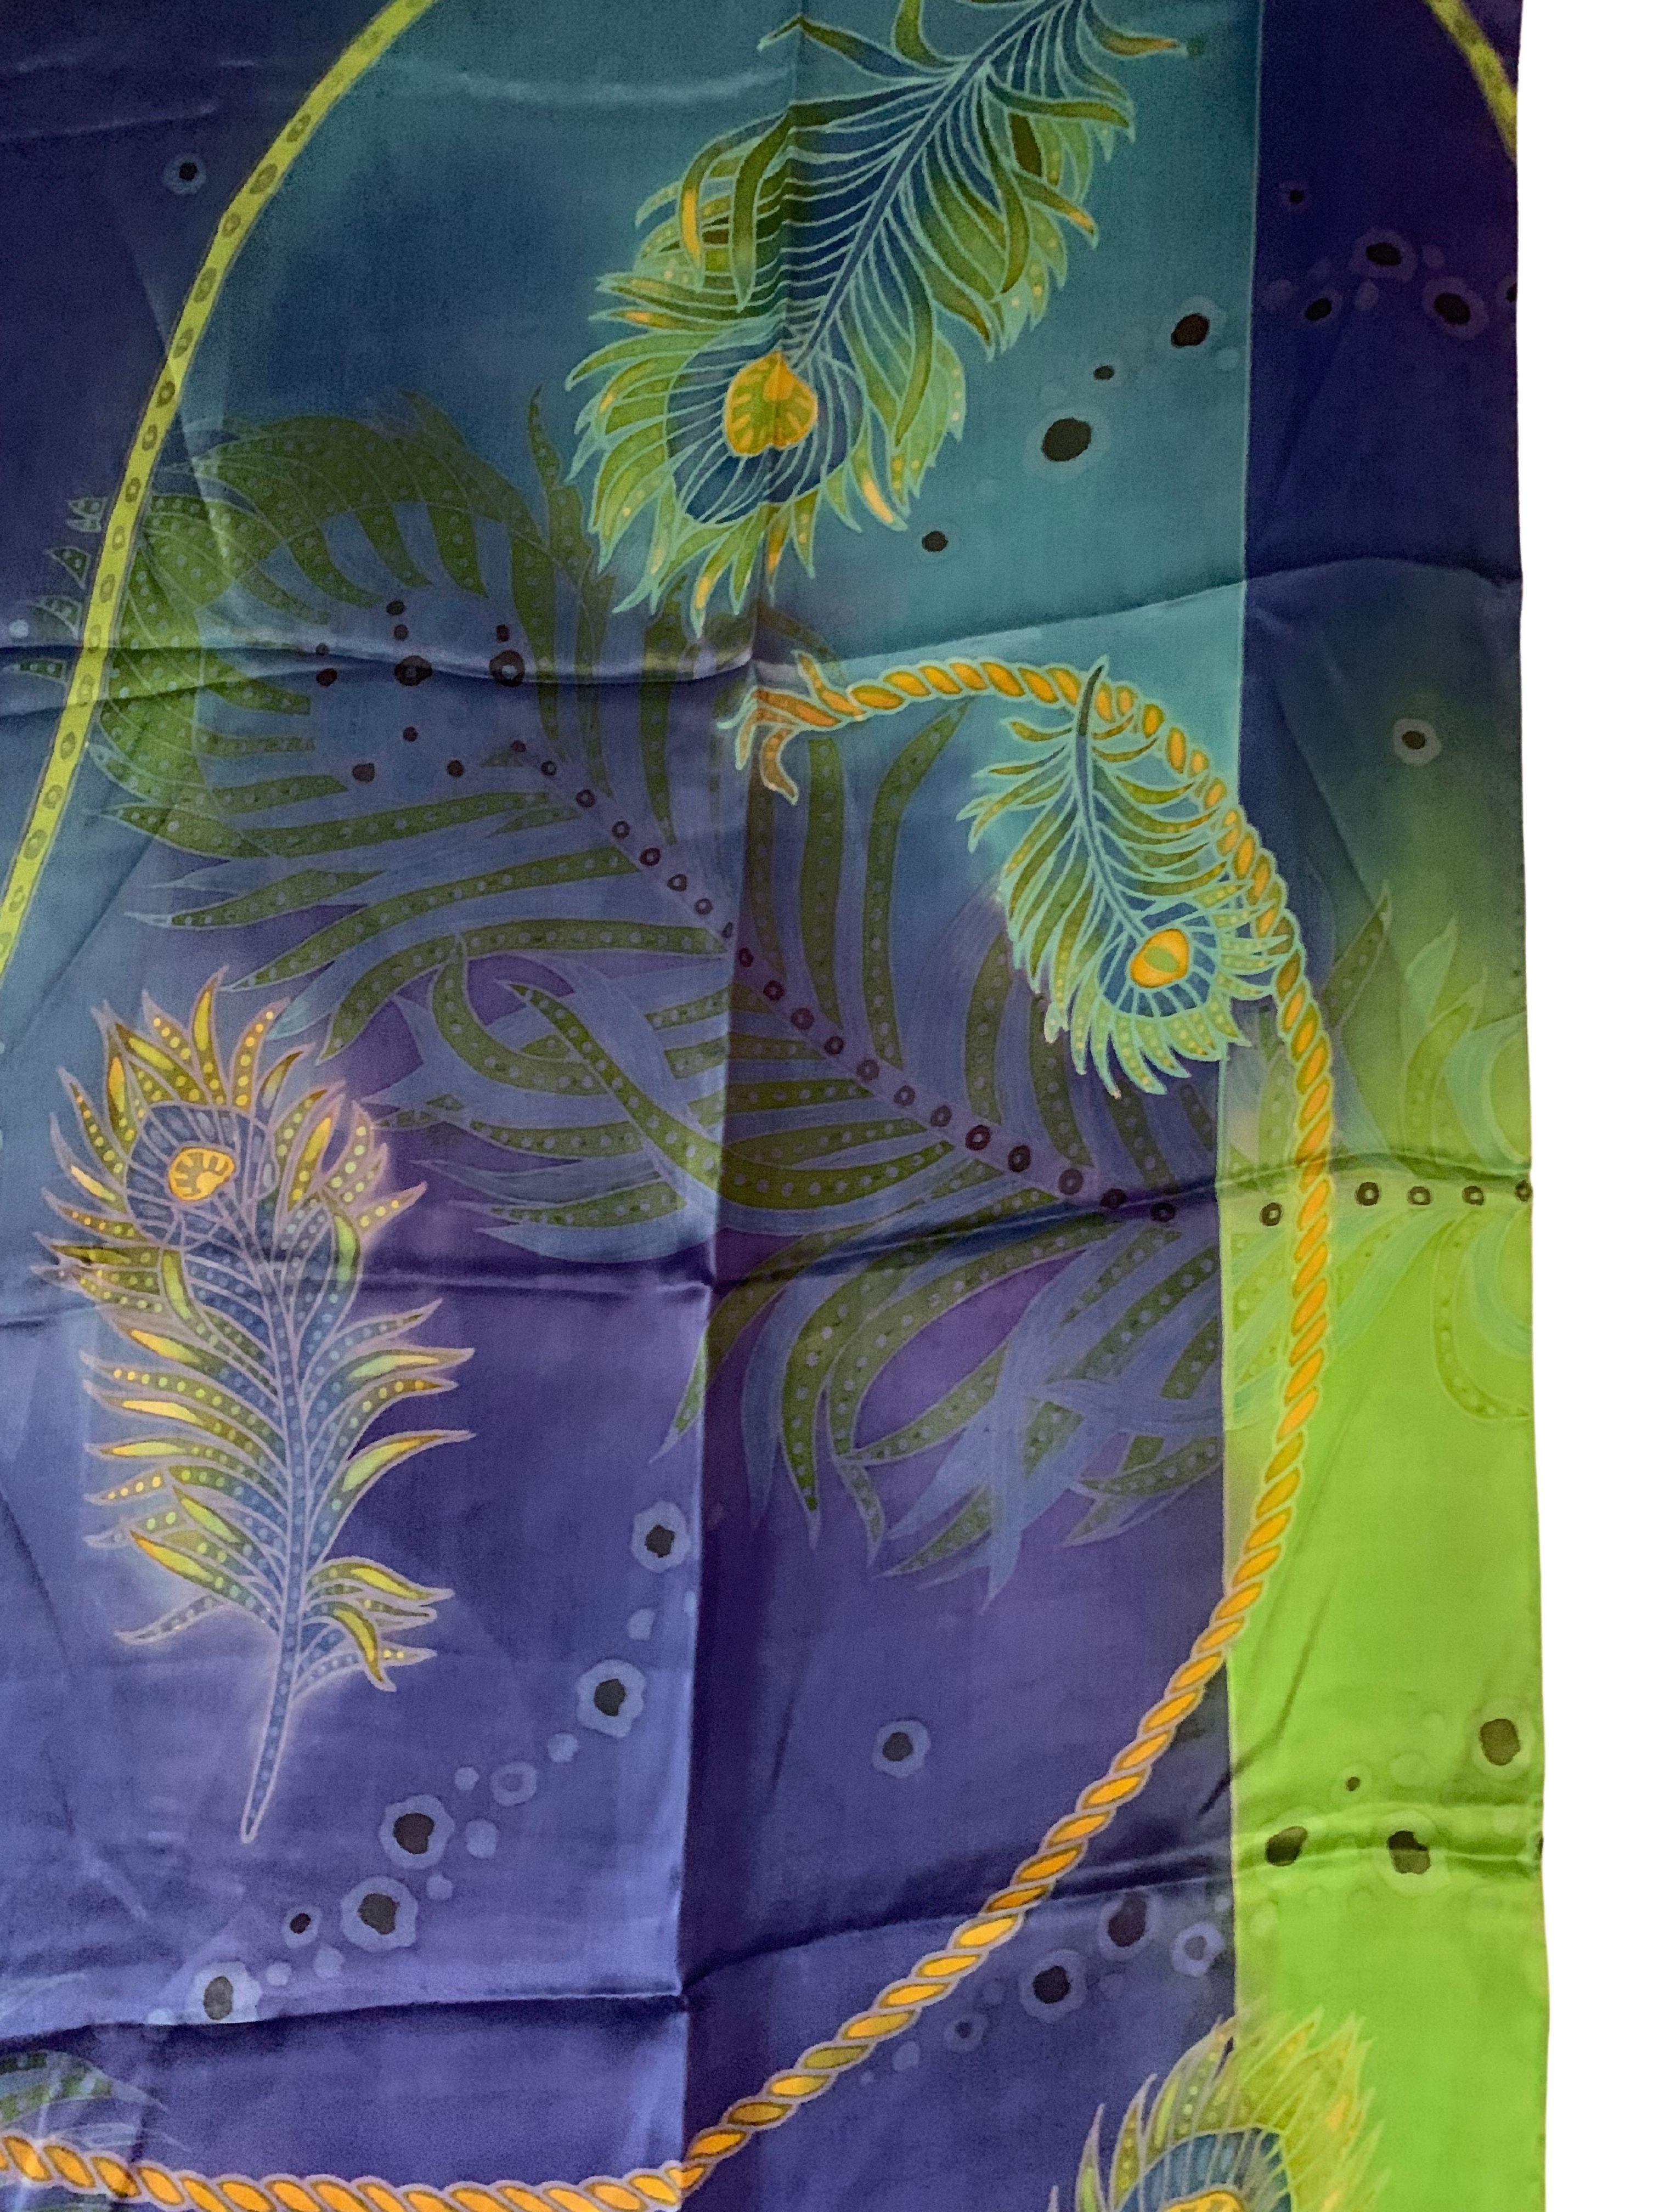 Ein wunderschönes handgefertigtes Seidentextil aus Malaysia mit atemberaubenden Details und Schattierungen. Ein wunderbares Dekorationsobjekt, das Wärme und Farbe in jeden Raum bringt. Dieses Textil wurde von lokalen Webern in Handarbeit hergestellt.